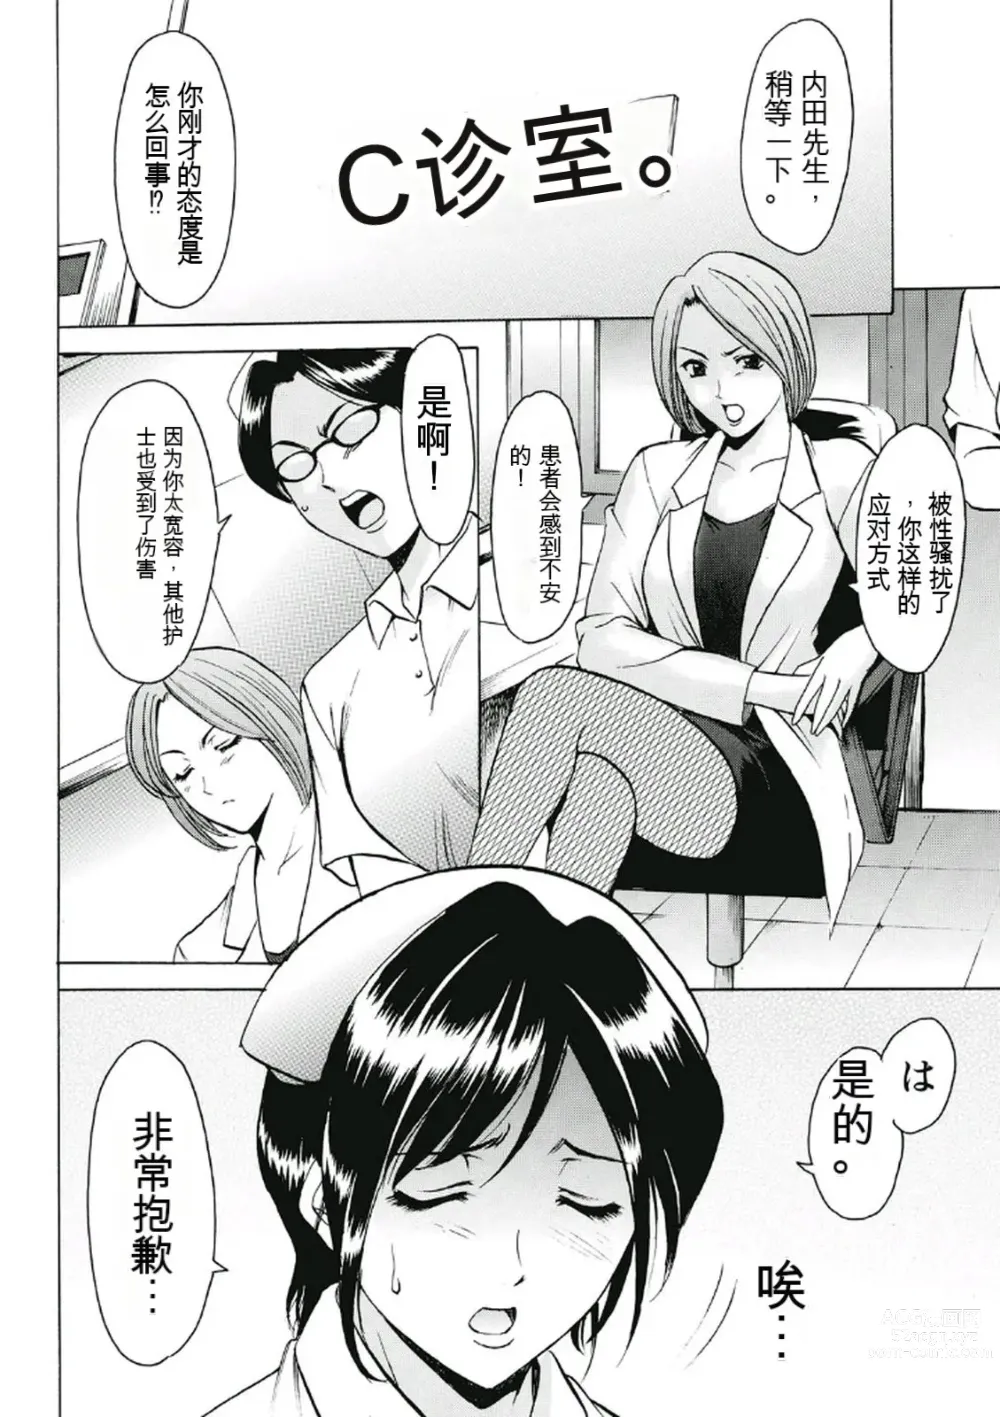 Page 6 of manga Chijoku Byoutou -Hakui no Datenshi-